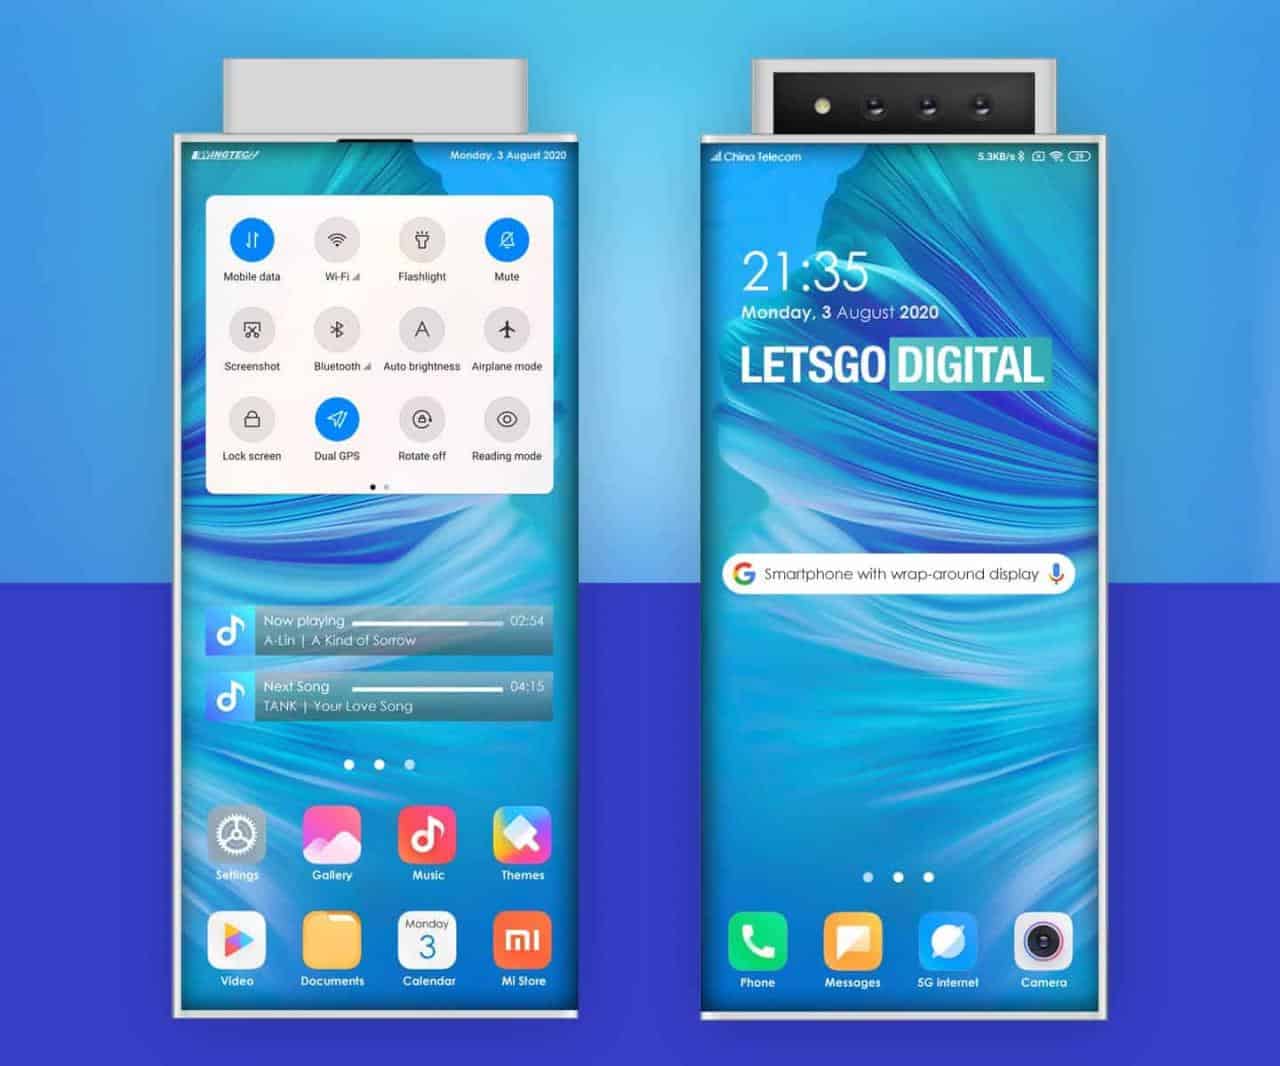 Dos nuevas patentes de teléfonos de Xiaomi en 2020